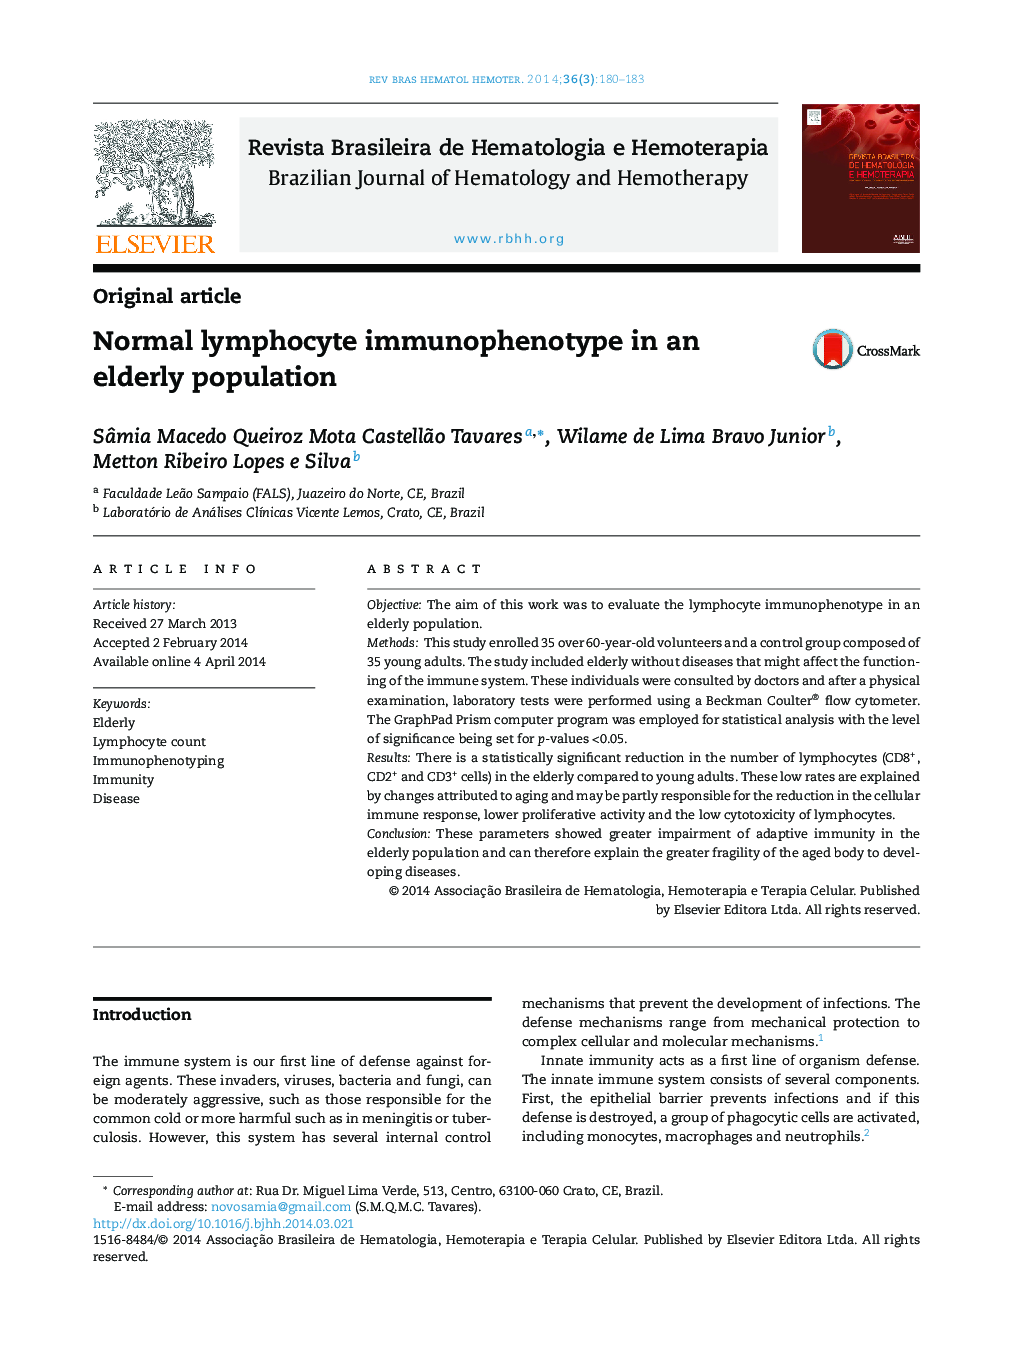 Normal lymphocyte immunophenotype in an elderly population